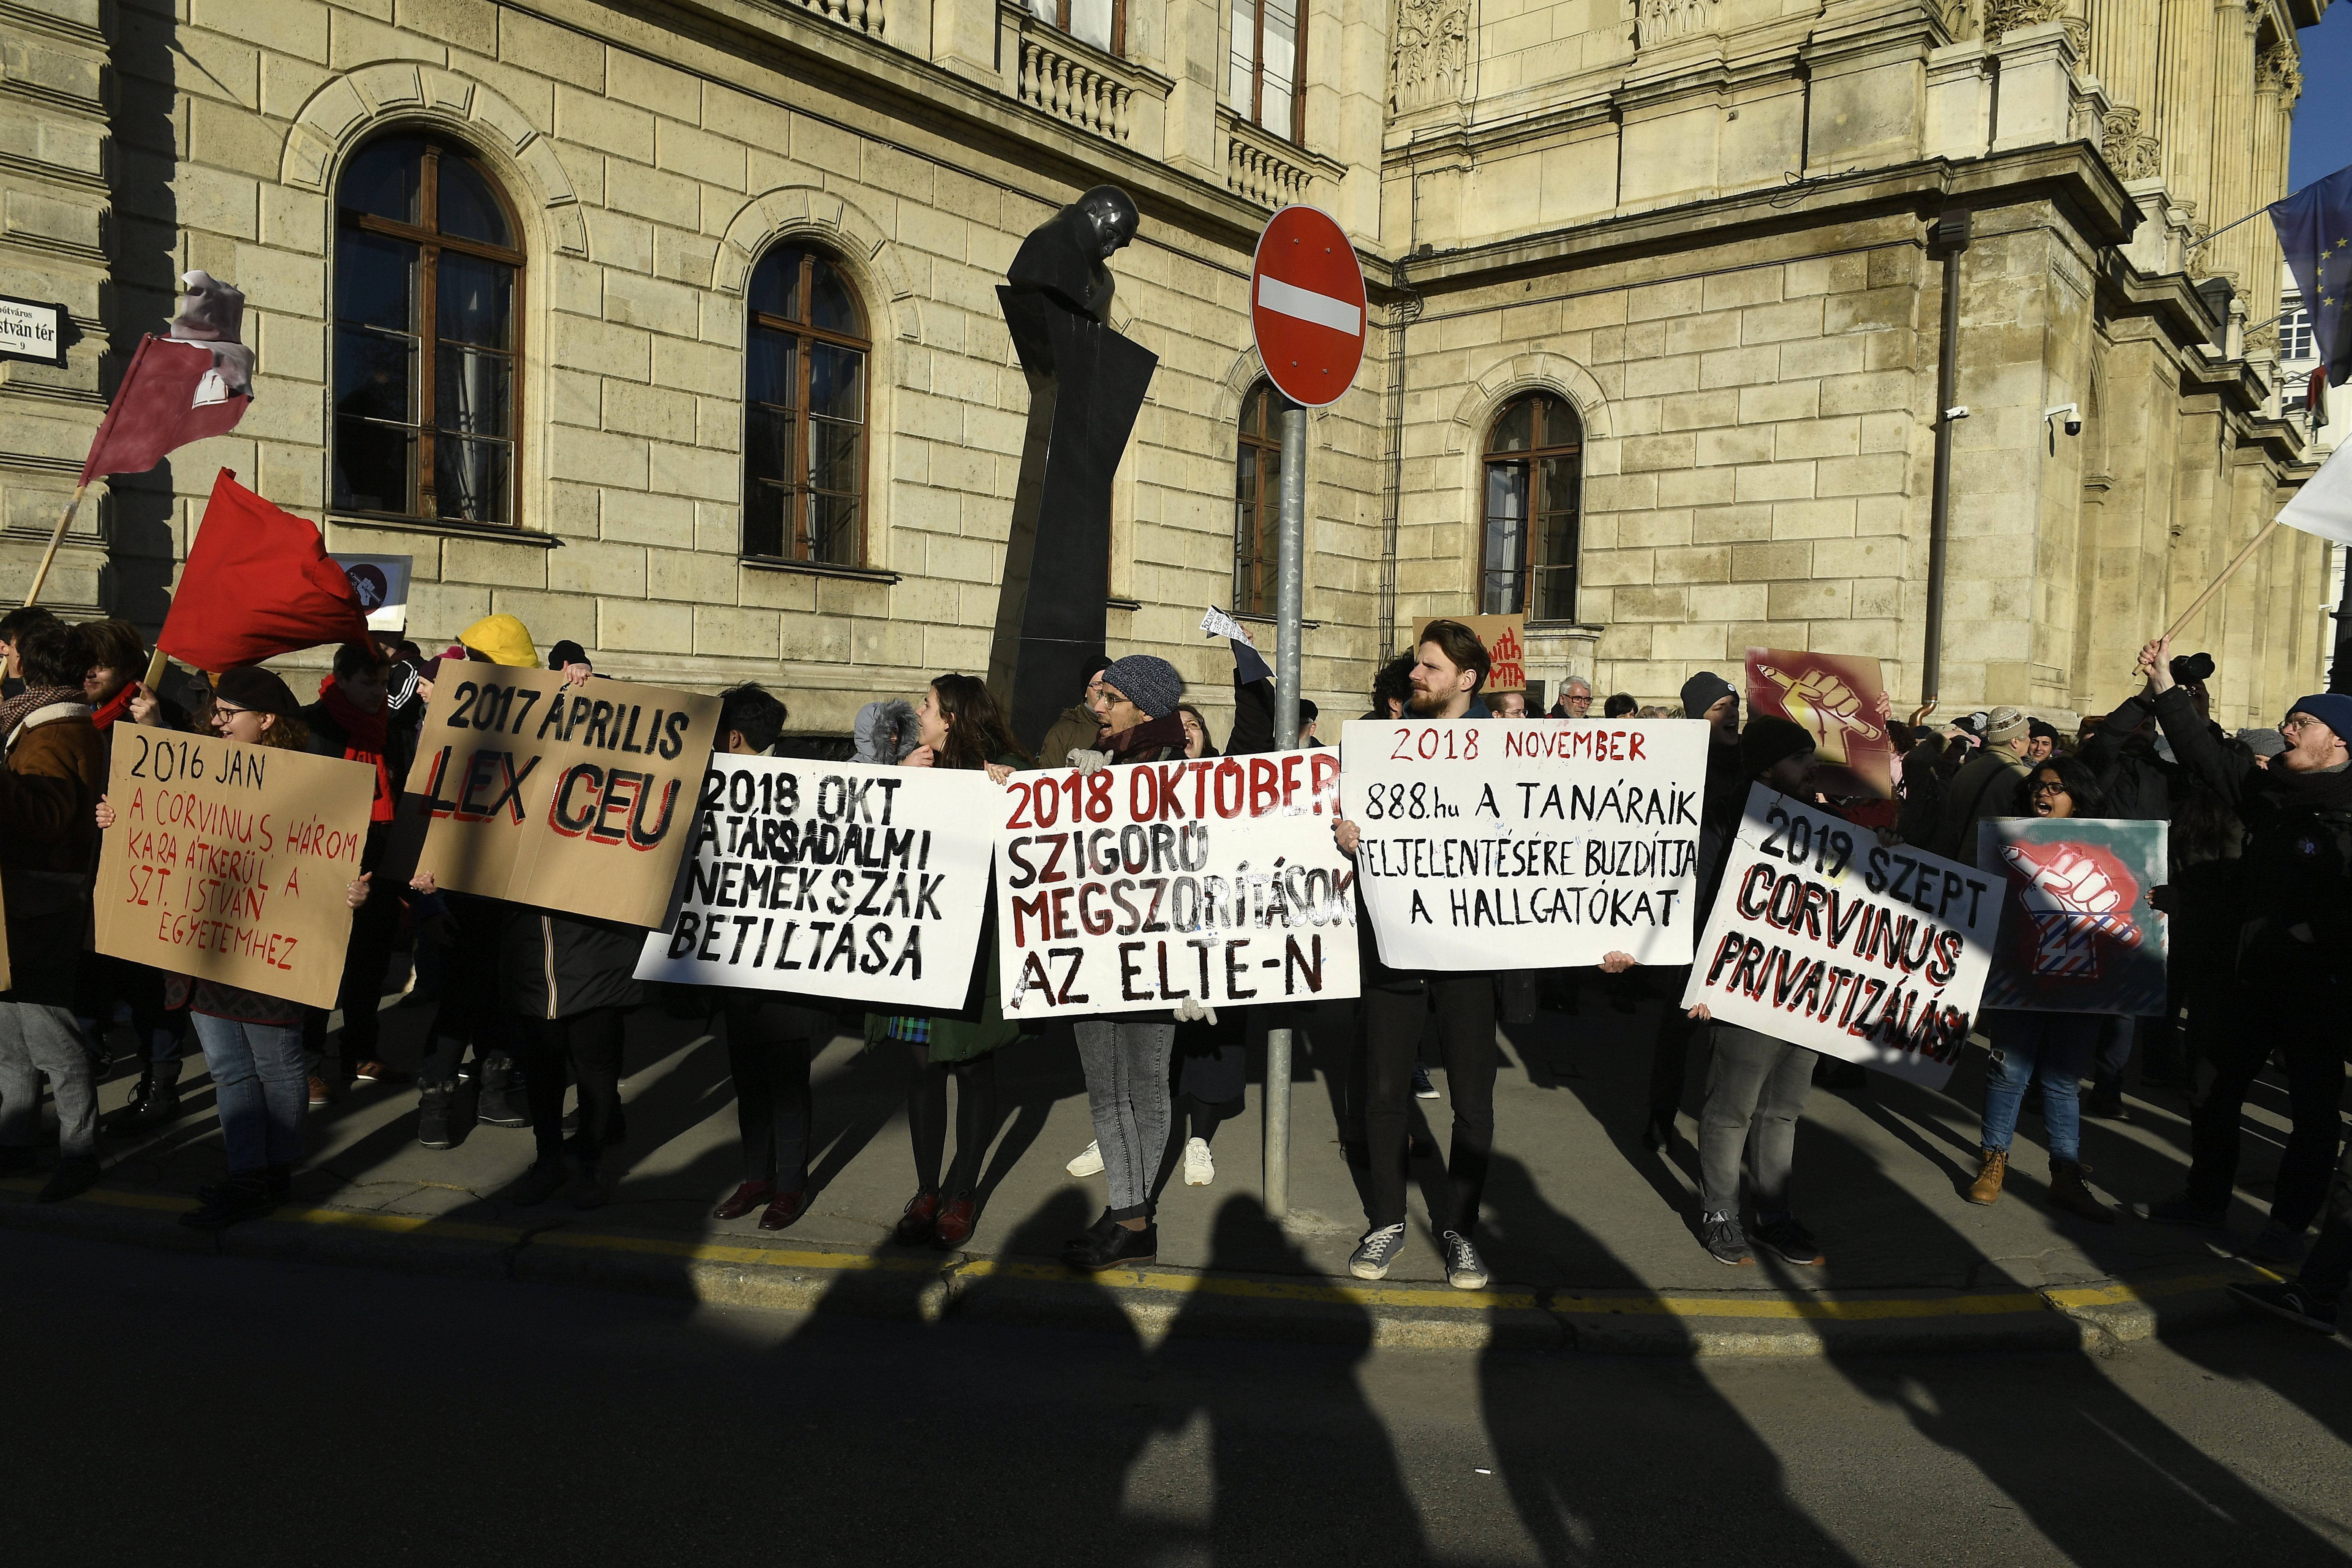 Zaměstnanci Maďarské vědecké akademie protestují proti reorganizaci